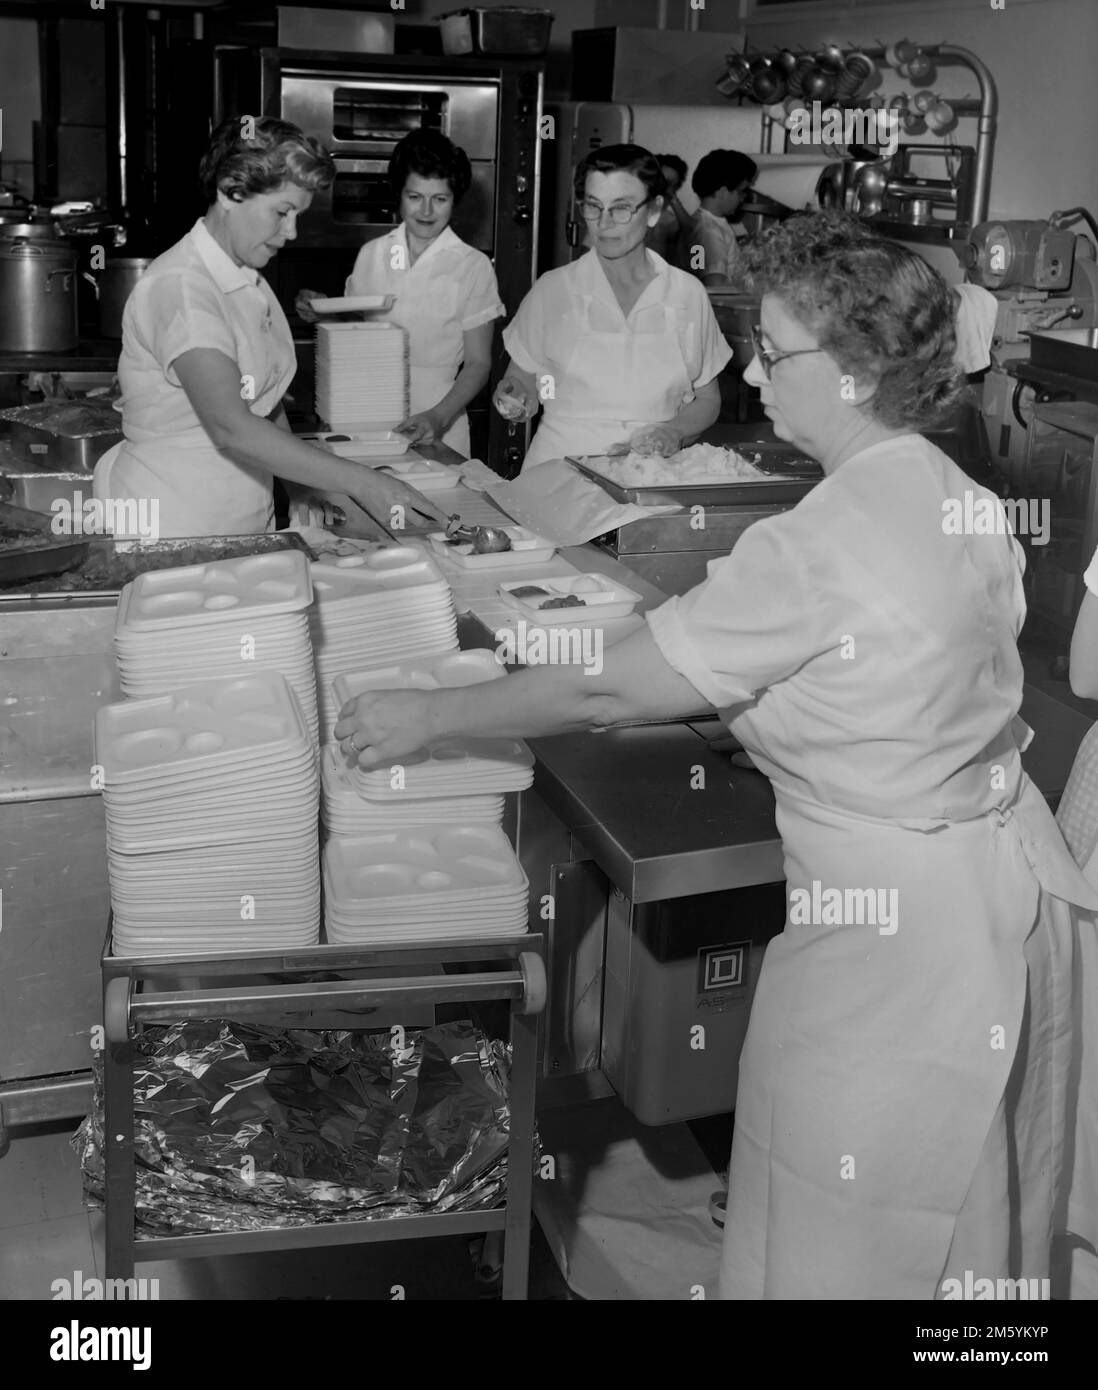 Pranzo le Signore preparano i pranzi in una caffetteria della scuola in California, ca. 1961. Foto Stock